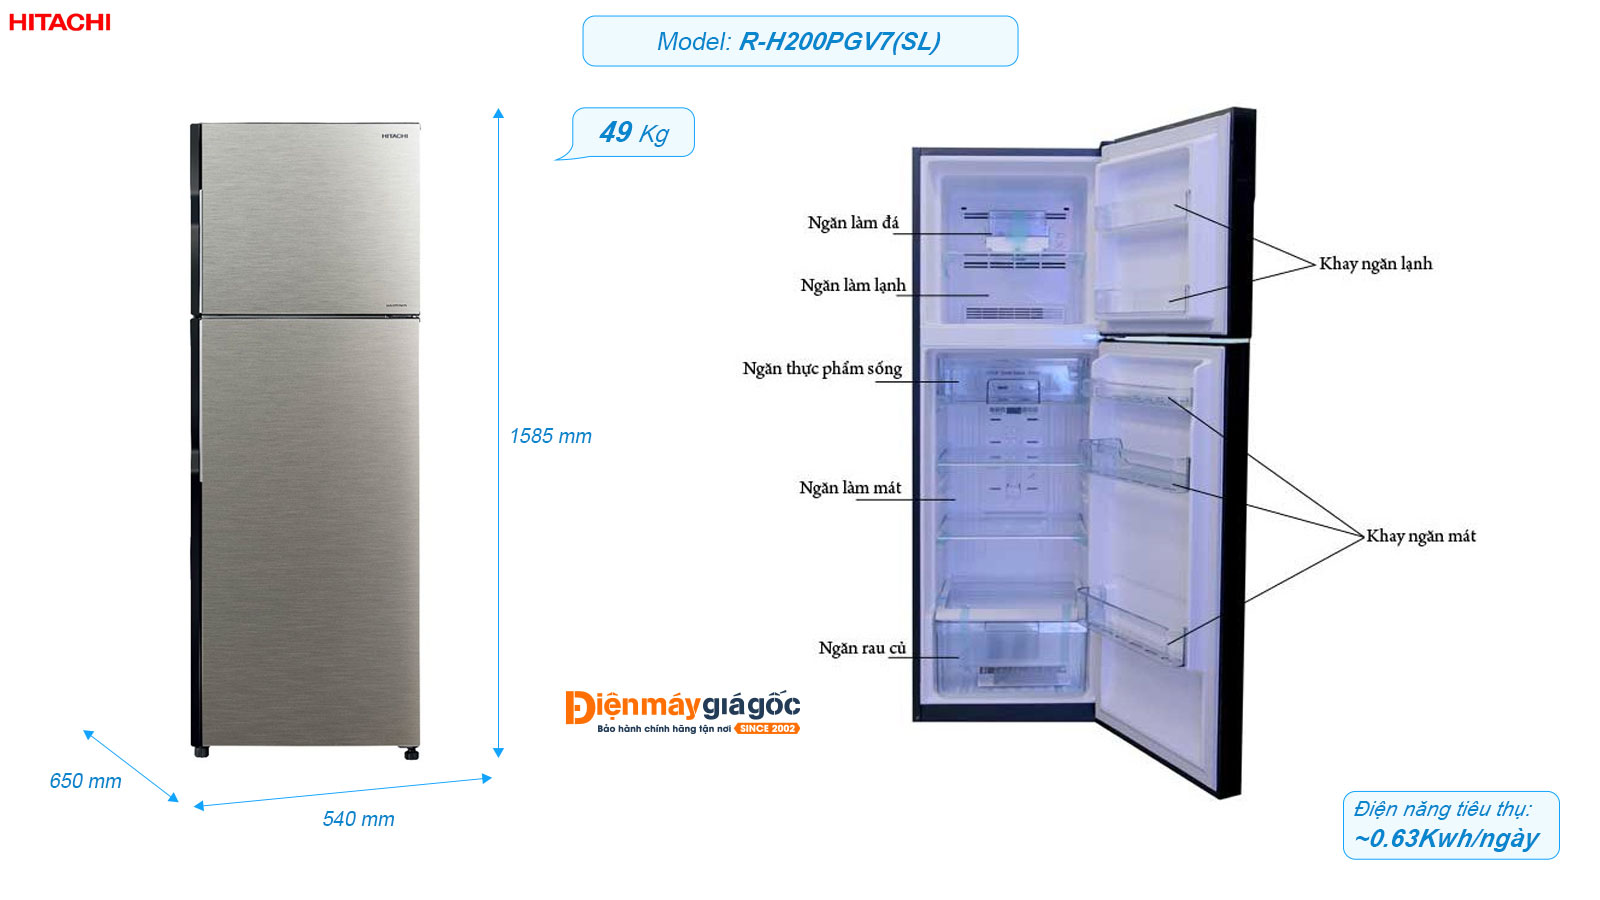 Tủ lạnh Hitachi ngăn đá trên 2 cửa Inverter 203 lít R-H200PGV7(SL)